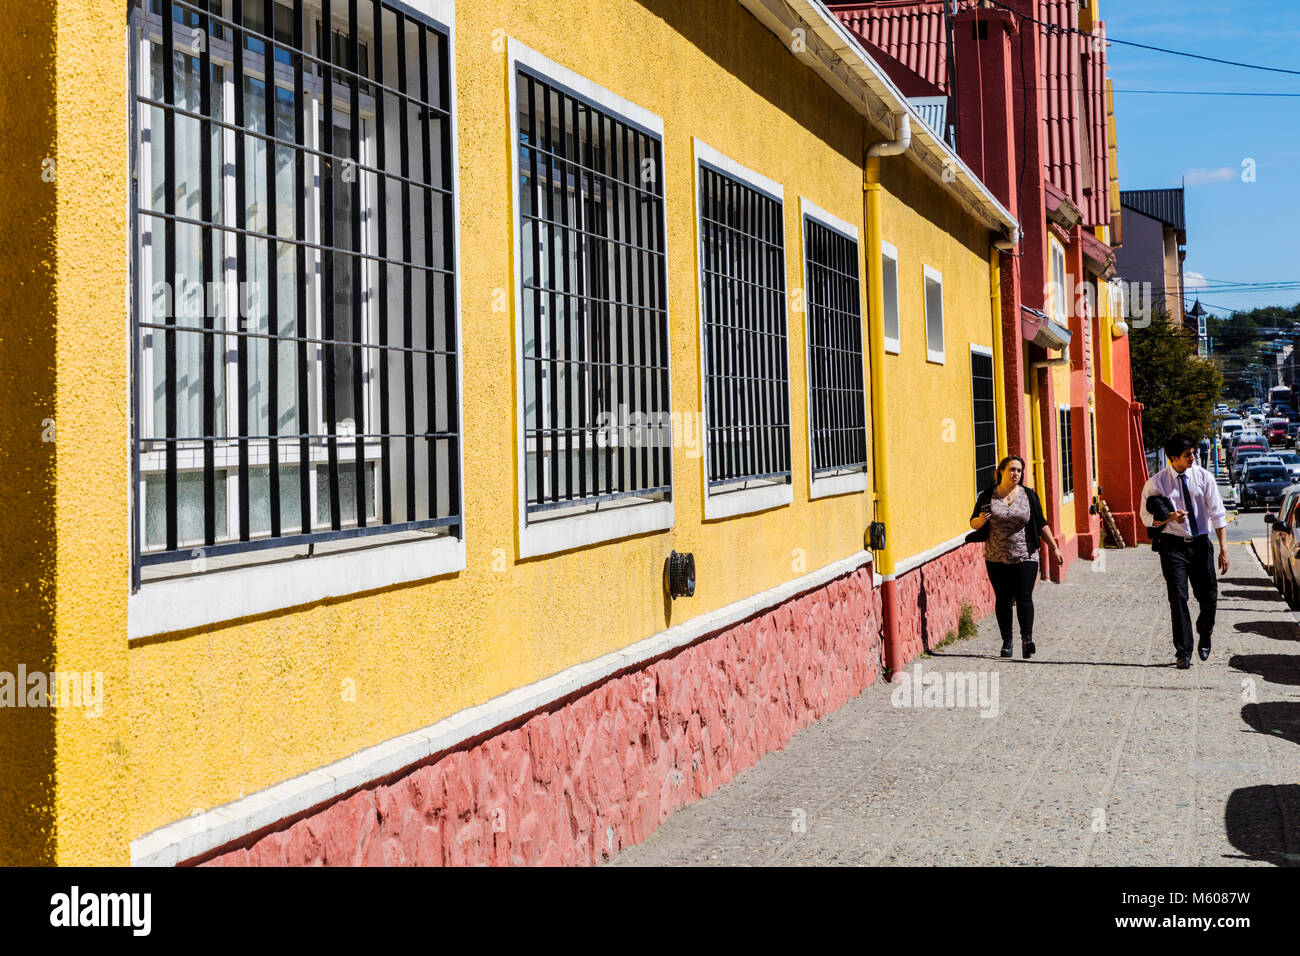 Fußgänger auf dem Bürgersteig; außen; Hafen von Ushuaia, Argentinien Stockfoto